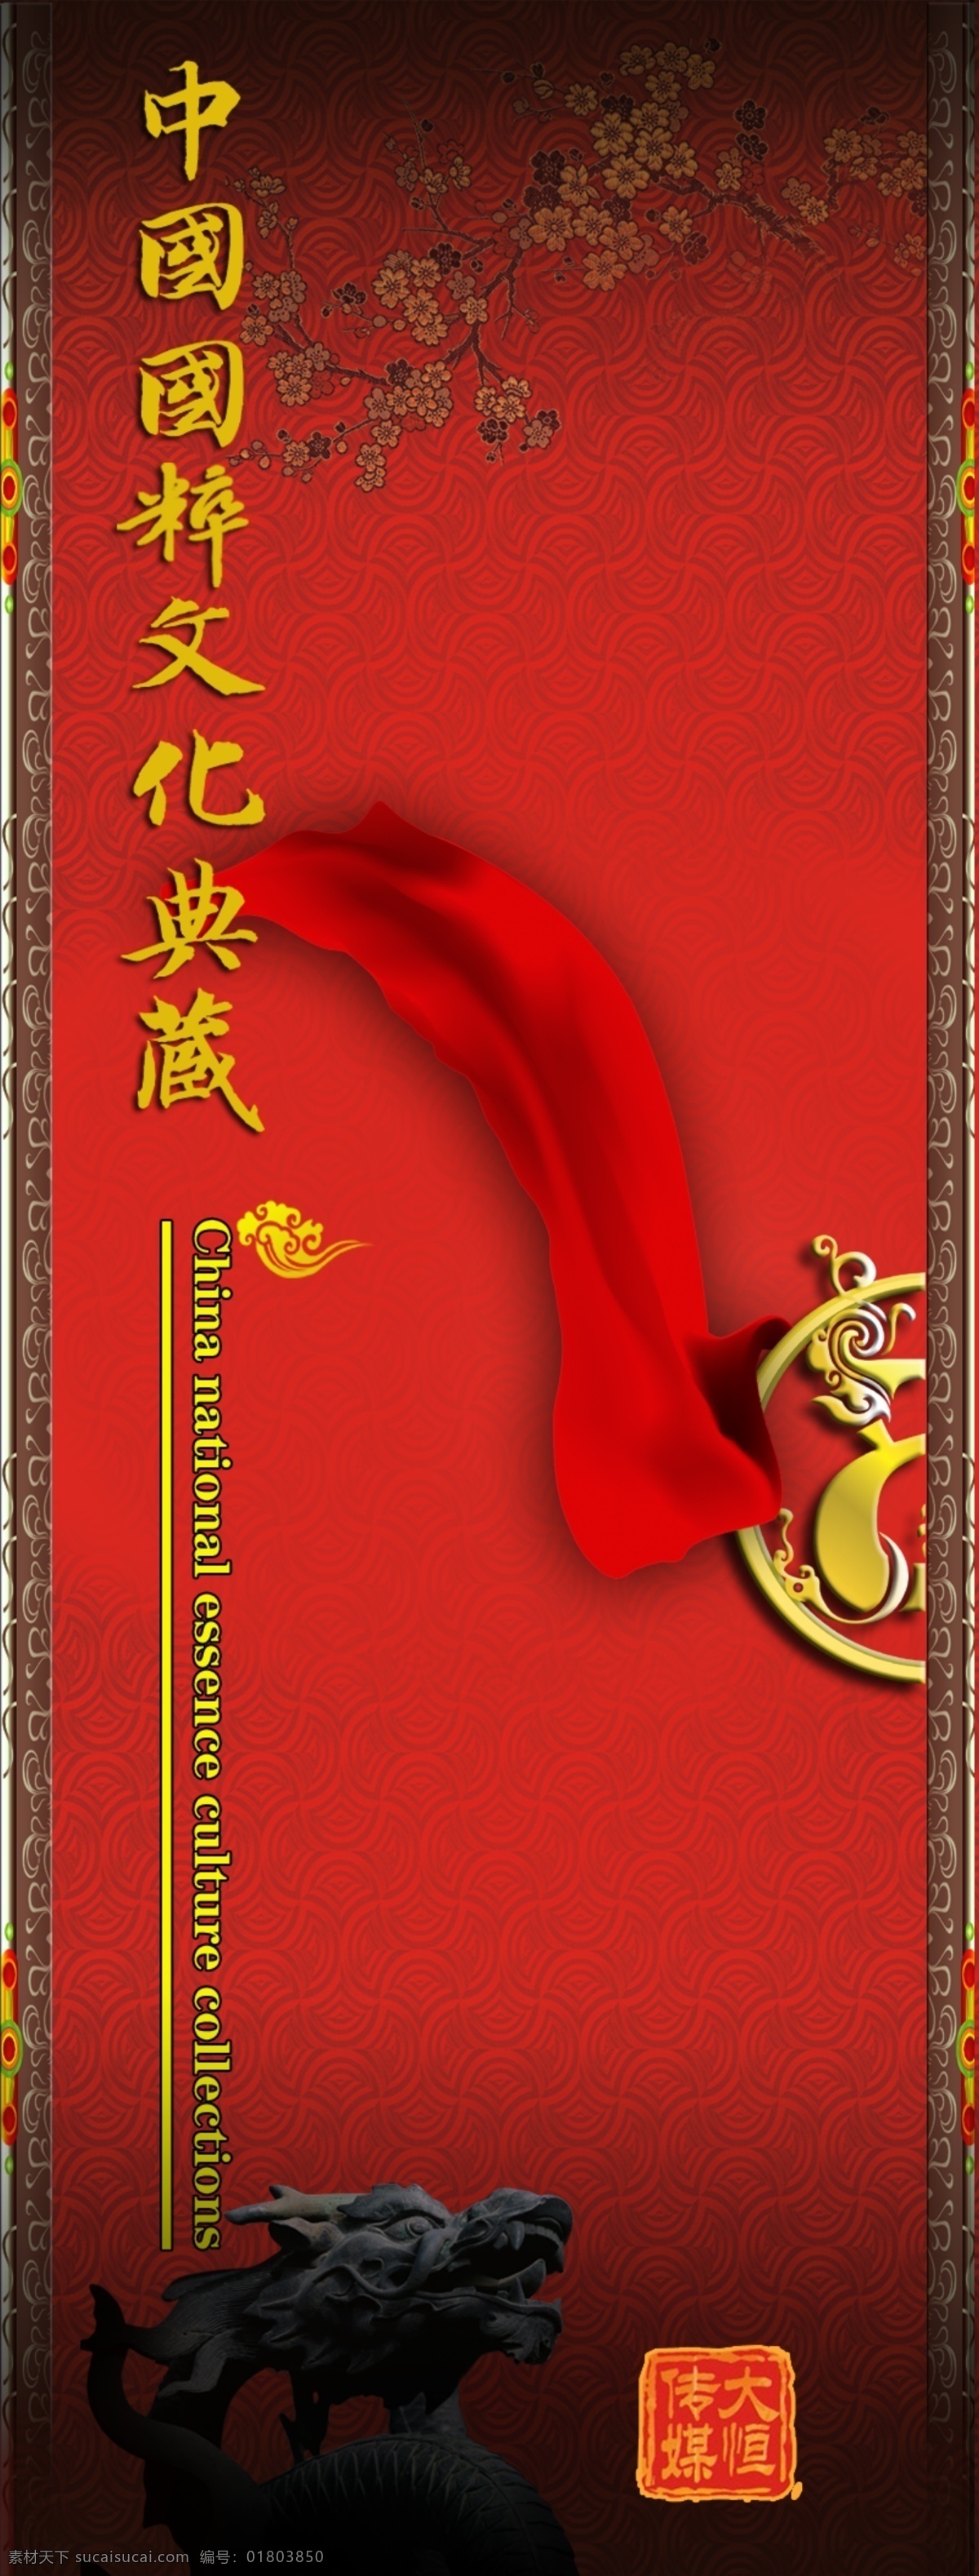 中国 国粹 文化 典藏 红色花纹背景 飘带 石龙 文化艺术 中国风 中国国粹 psd源文件